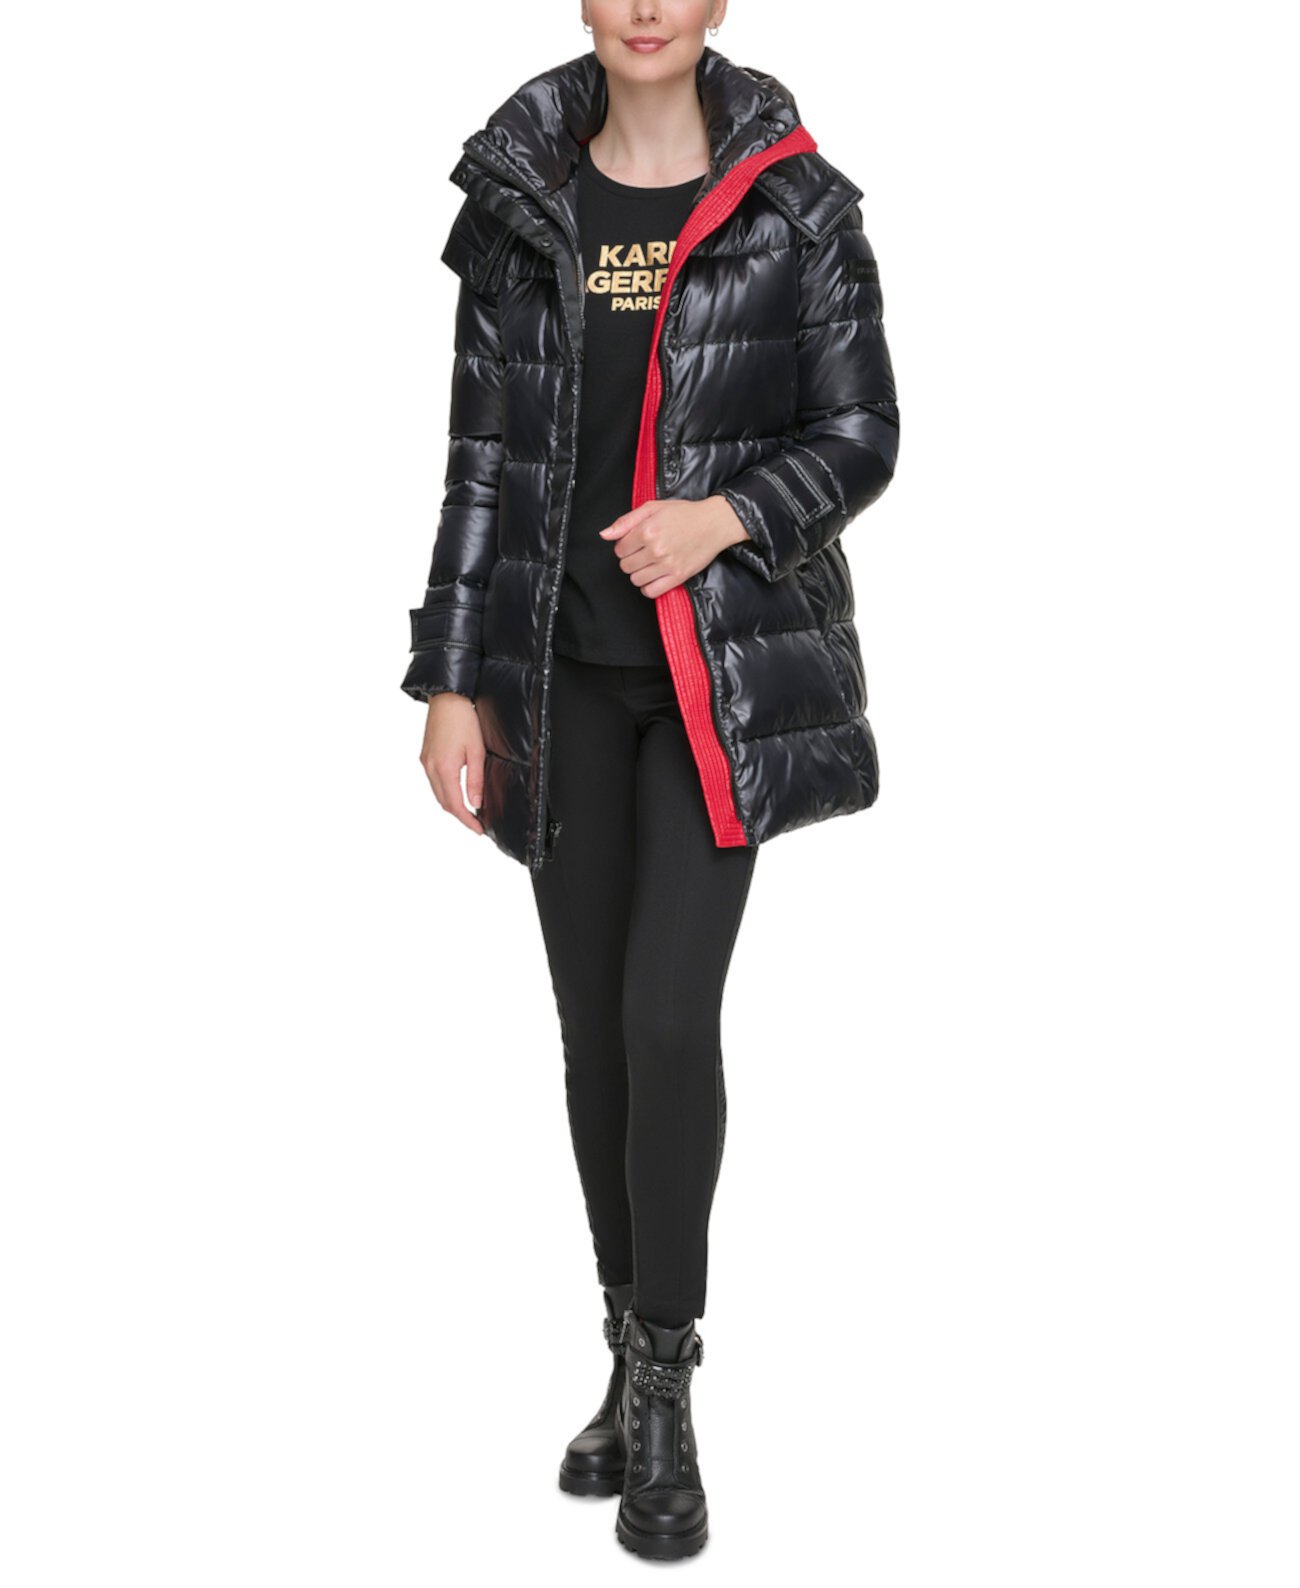 Женское Пуховое Пальто с Поясом и Капюшоном Karl Lagerfeld Paris Karl Lagerfeld Paris